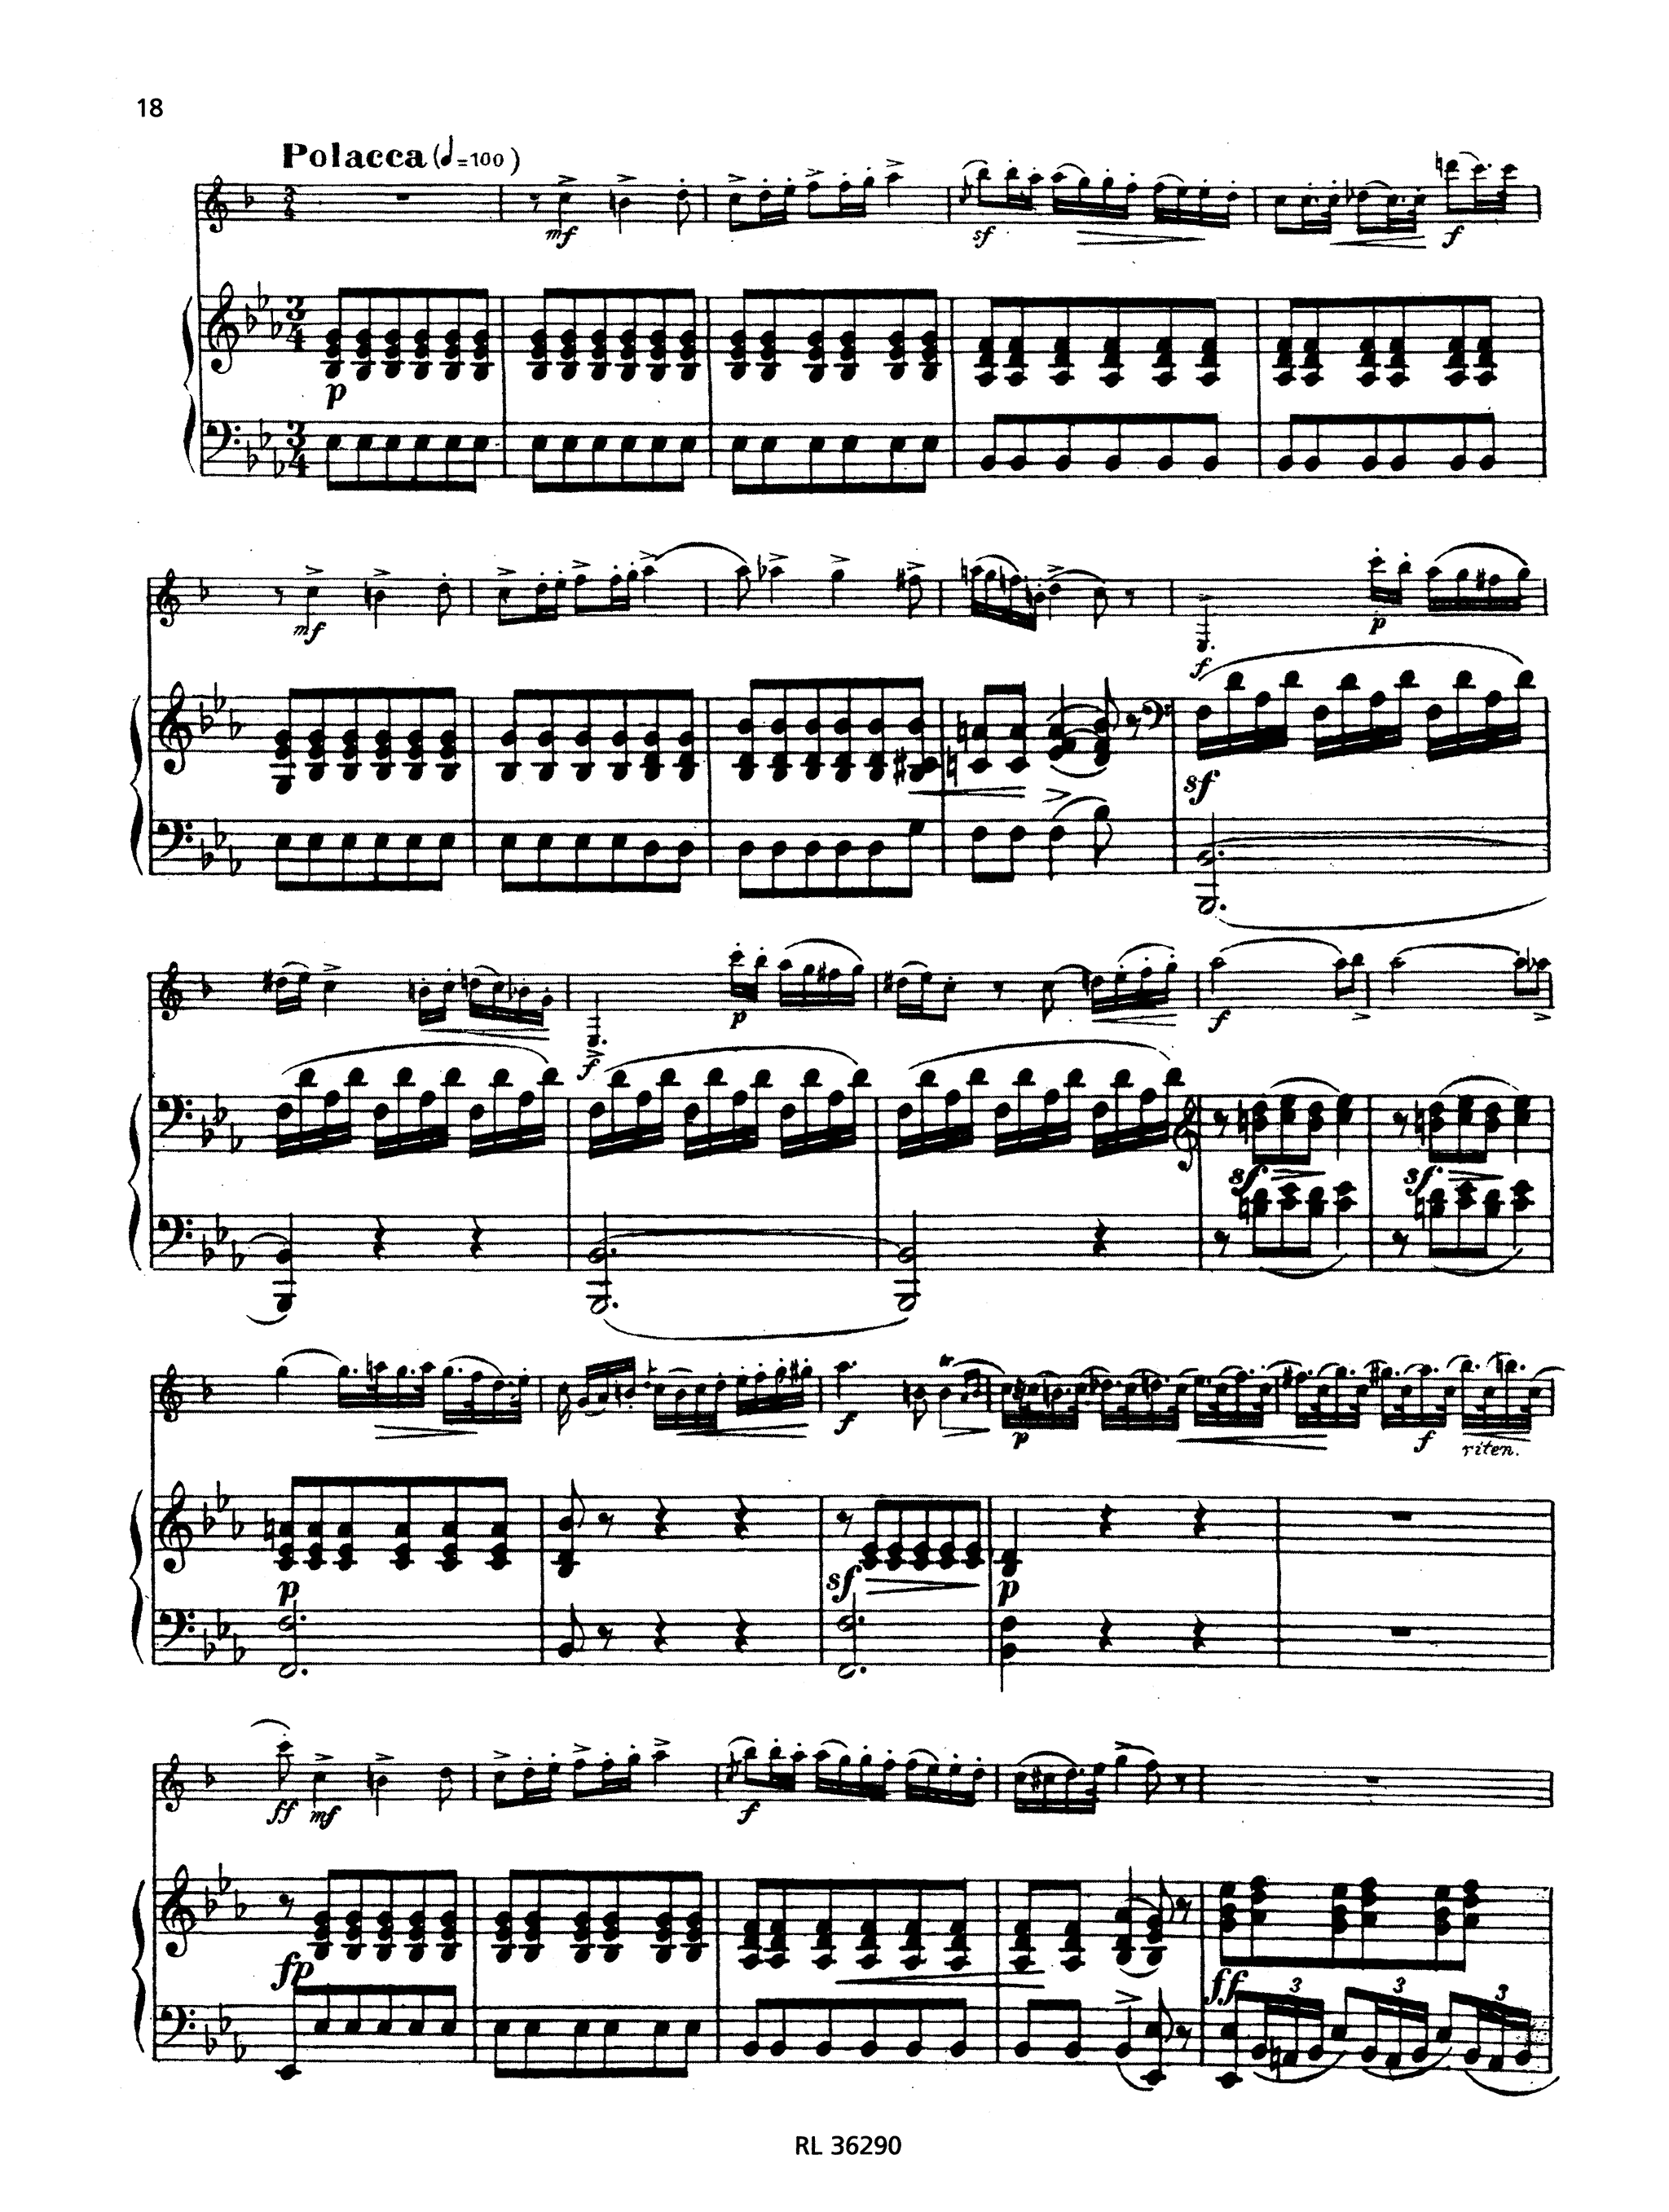 Clarinet Concerto No. 2, Op. 74 - Movement 3